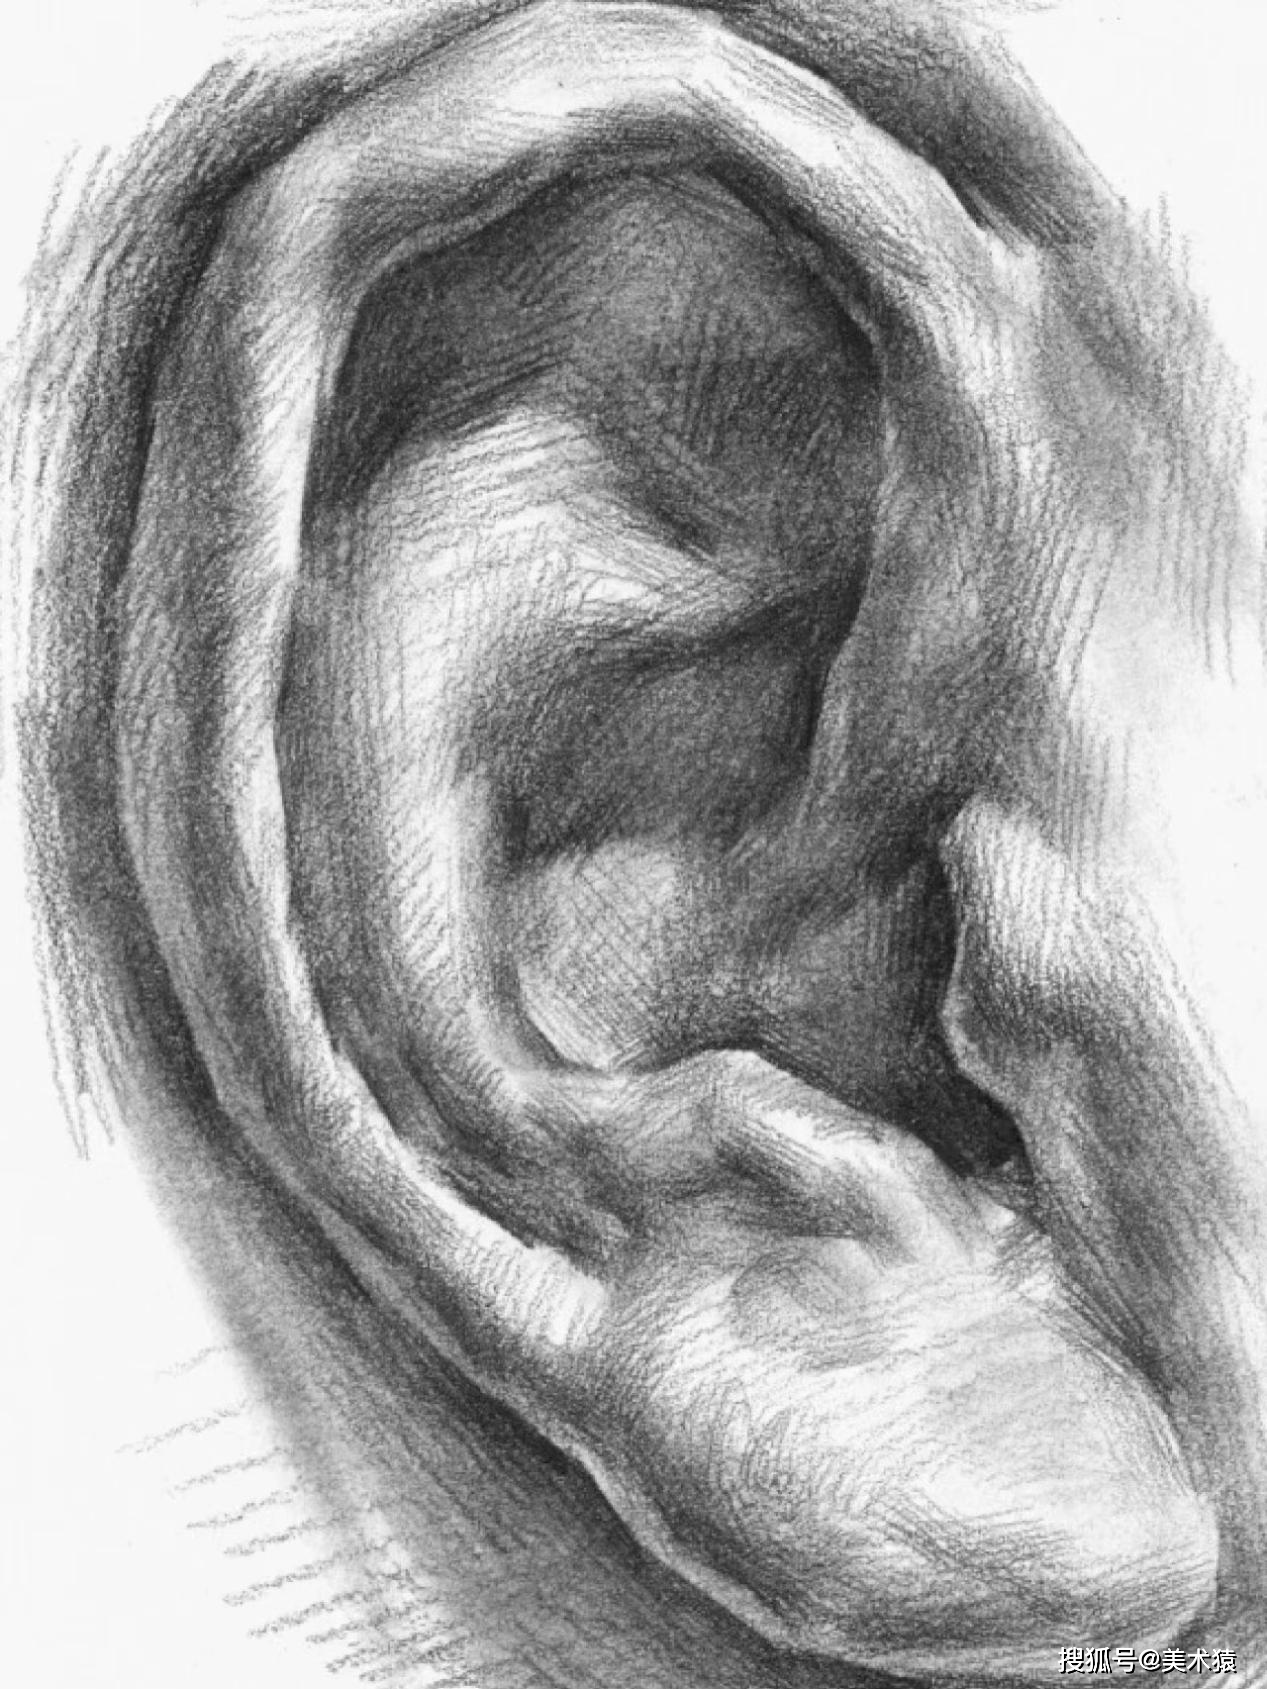 基础教学耳朵画法